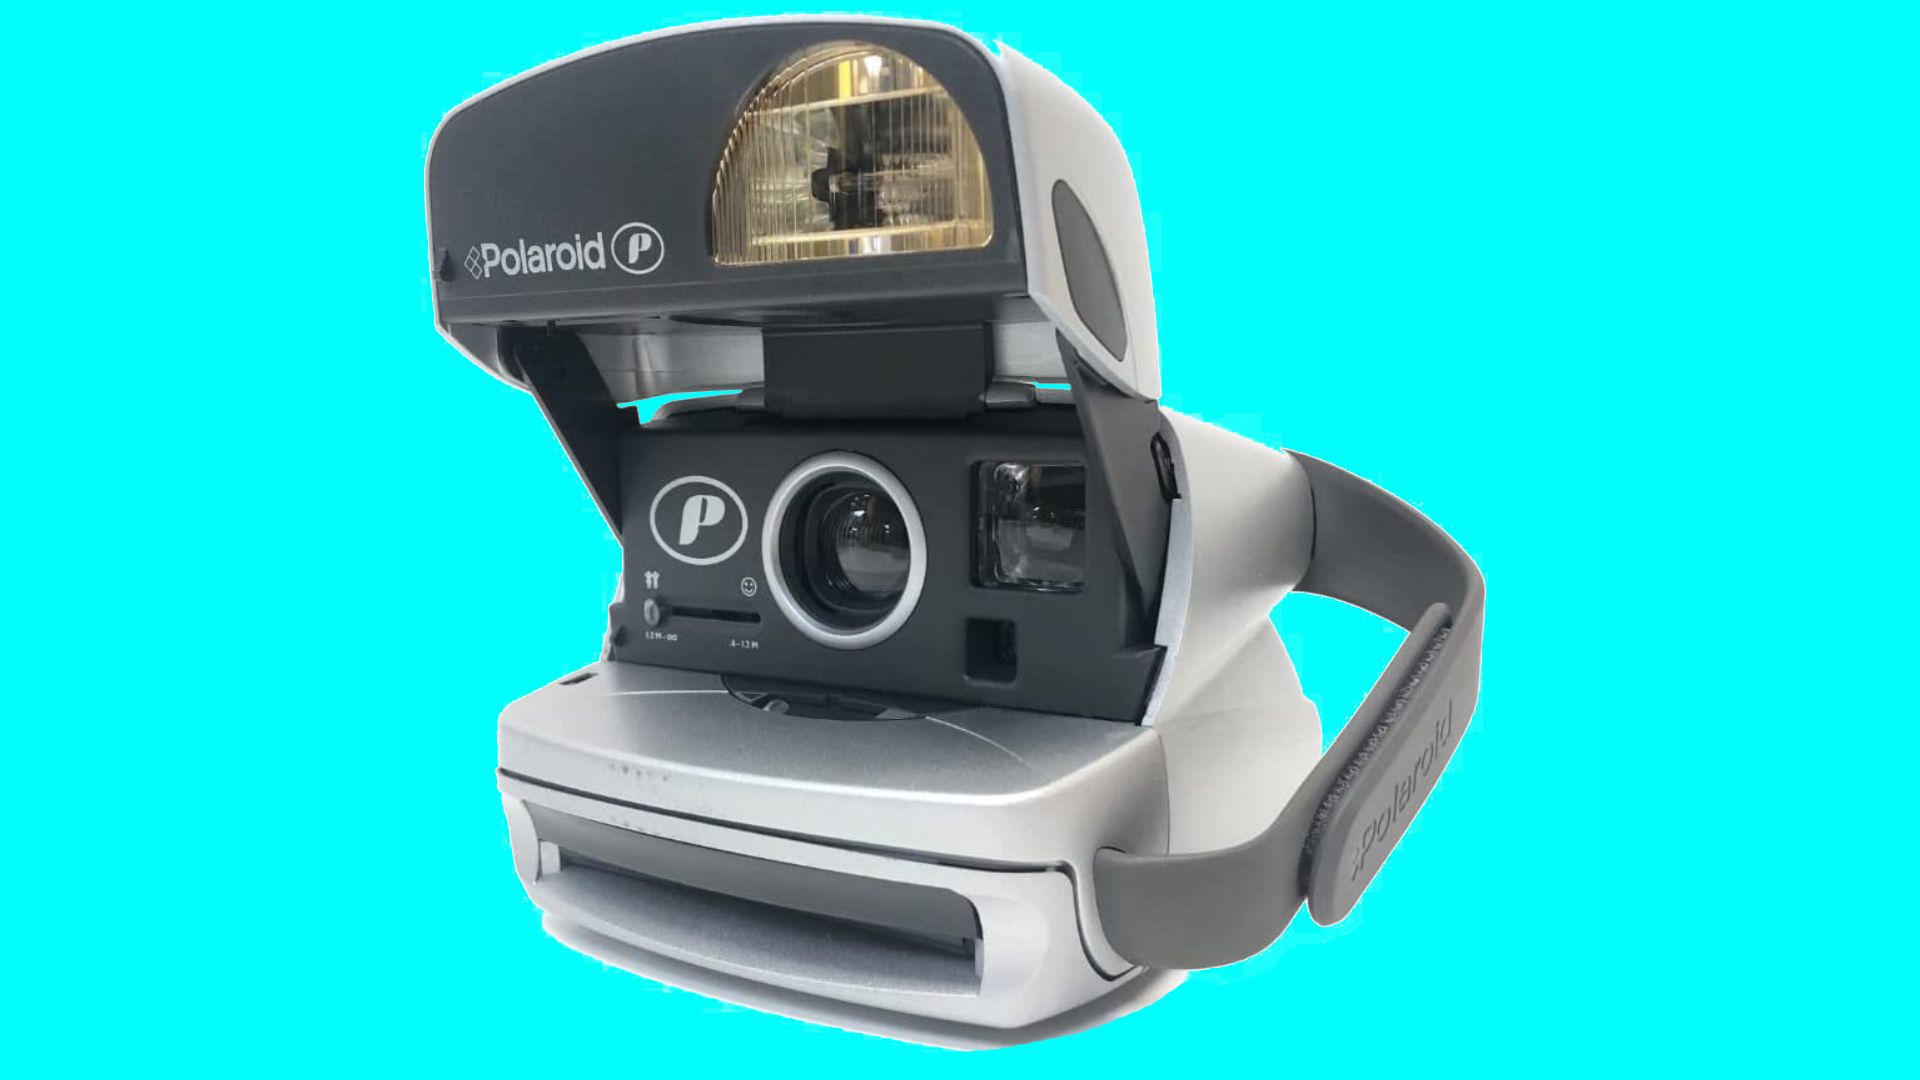  Камера моментальной печати Polaroid P600 на ярко-синем фоне